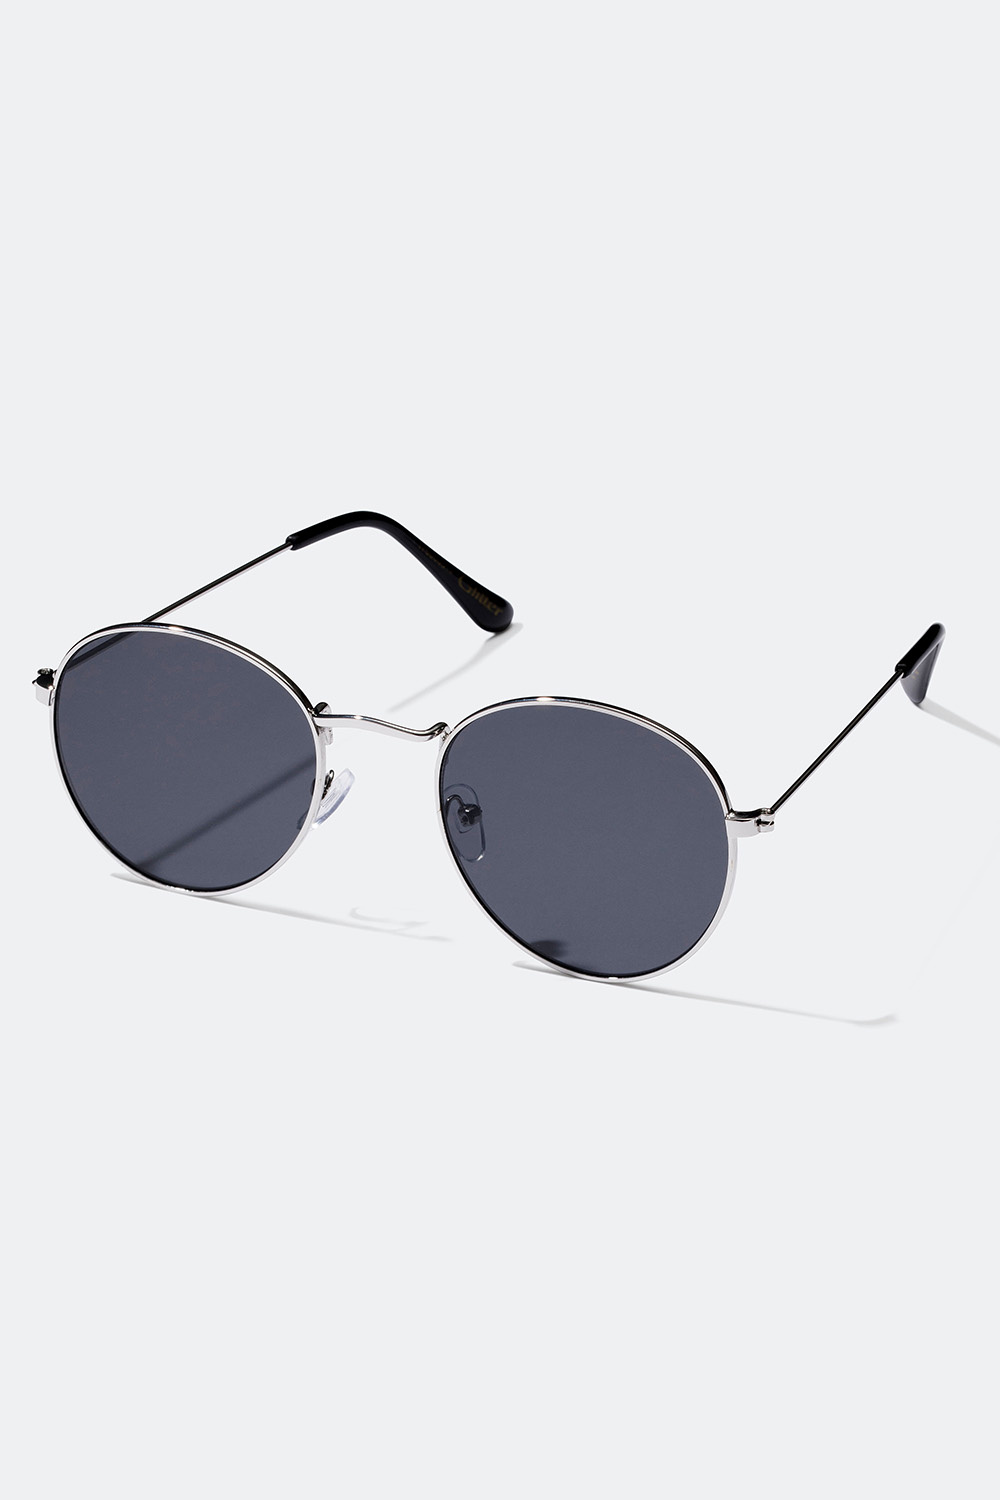 Shop solbriller online på